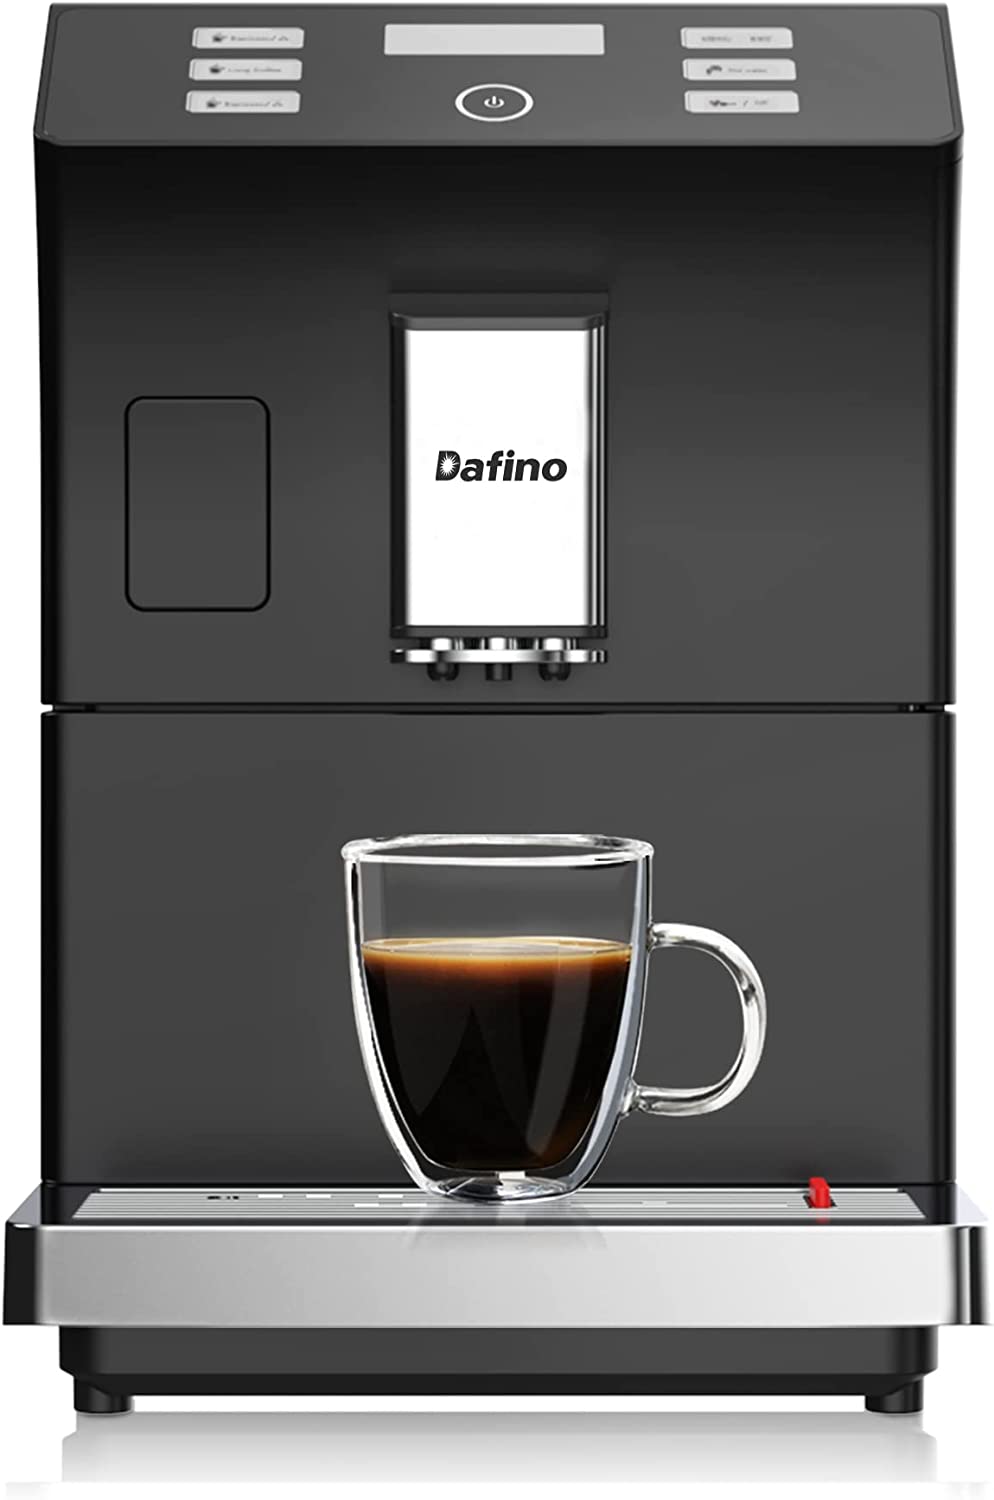 Dafino 206 Fully Automatic Espresso Machine